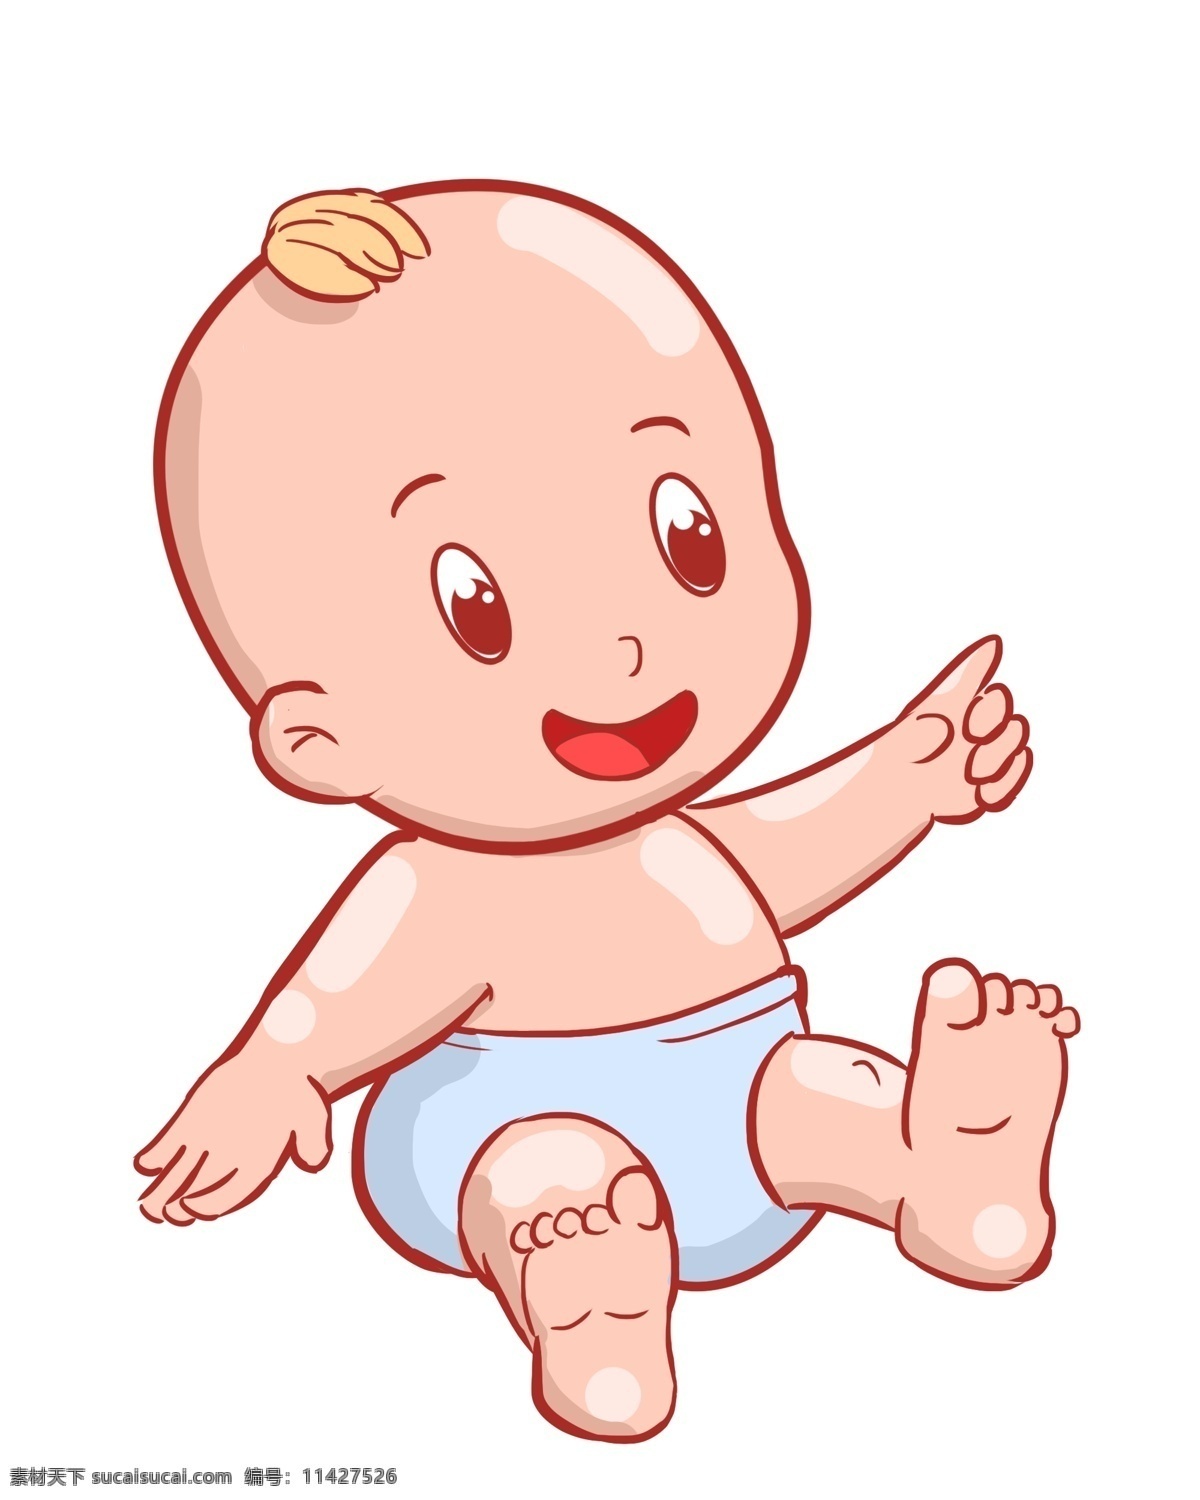 漂亮 婴儿 装饰 插画 漂亮的婴儿 可爱的婴儿 开心的婴儿 坐着的婴儿 微笑的婴儿 婴儿的插画